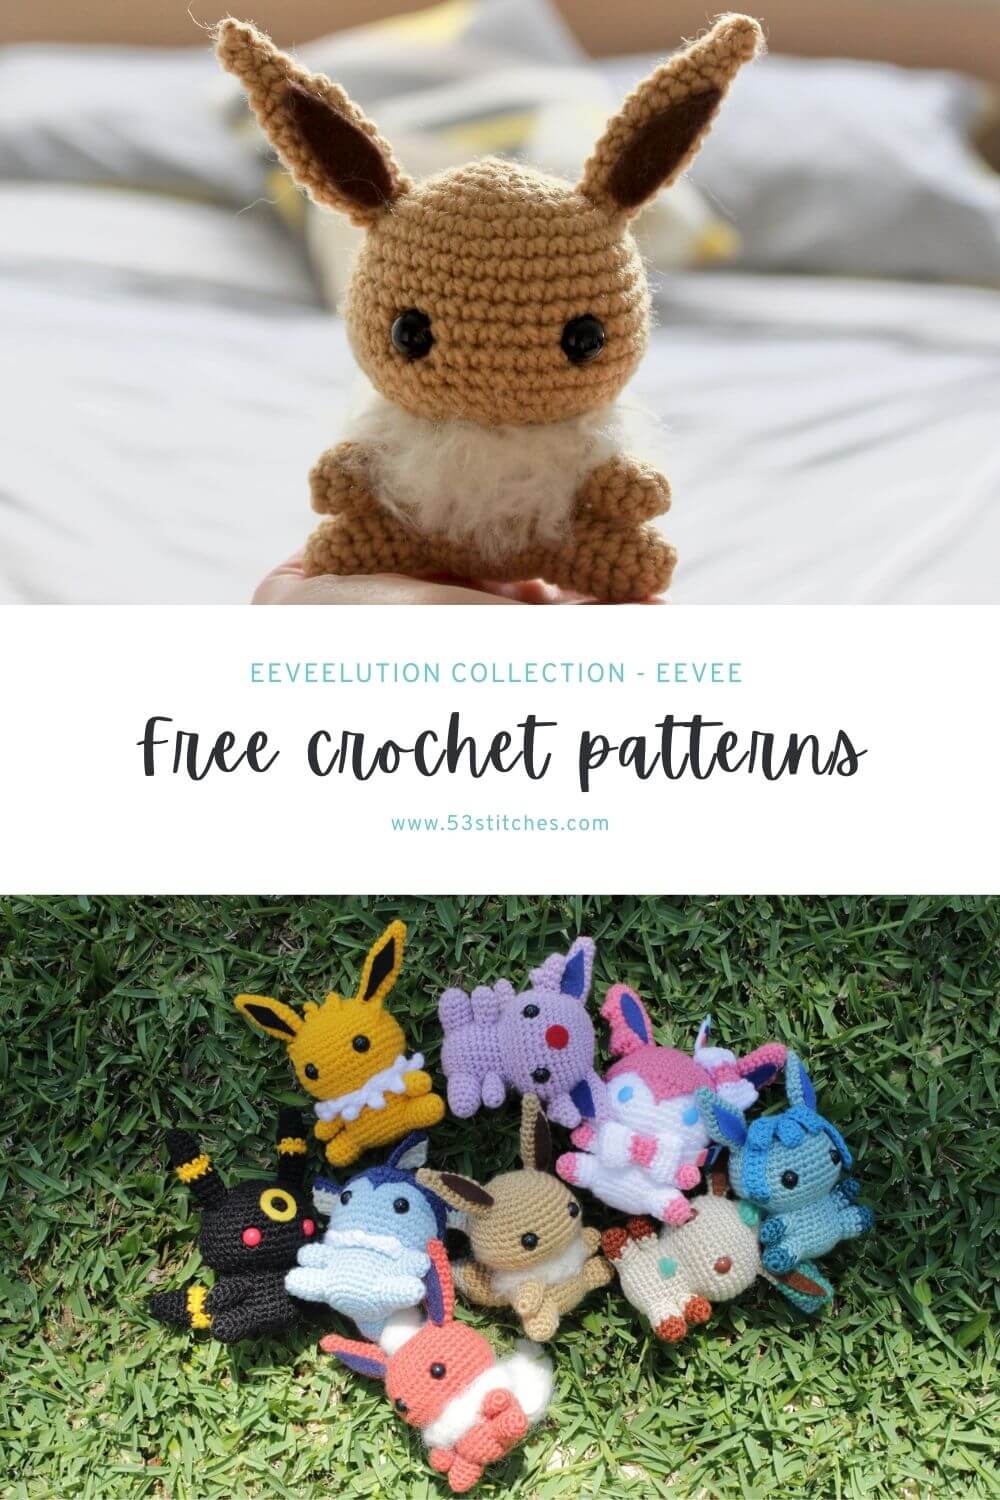 Eevee crochet pattern and eeveelutions